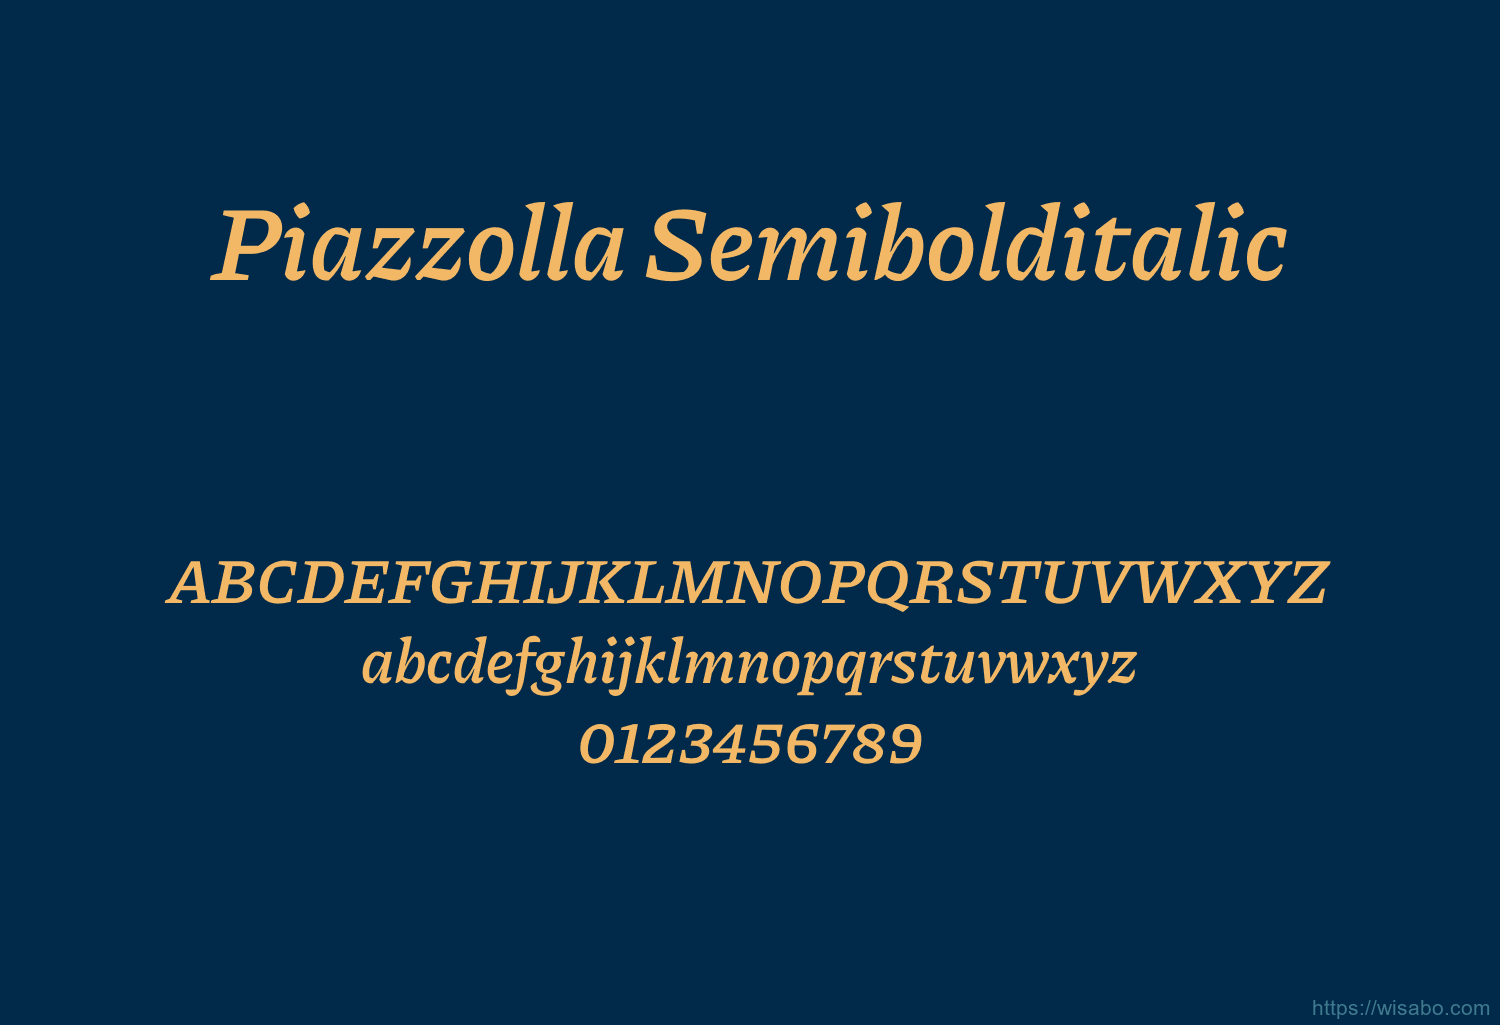 Piazzolla Semibolditalic